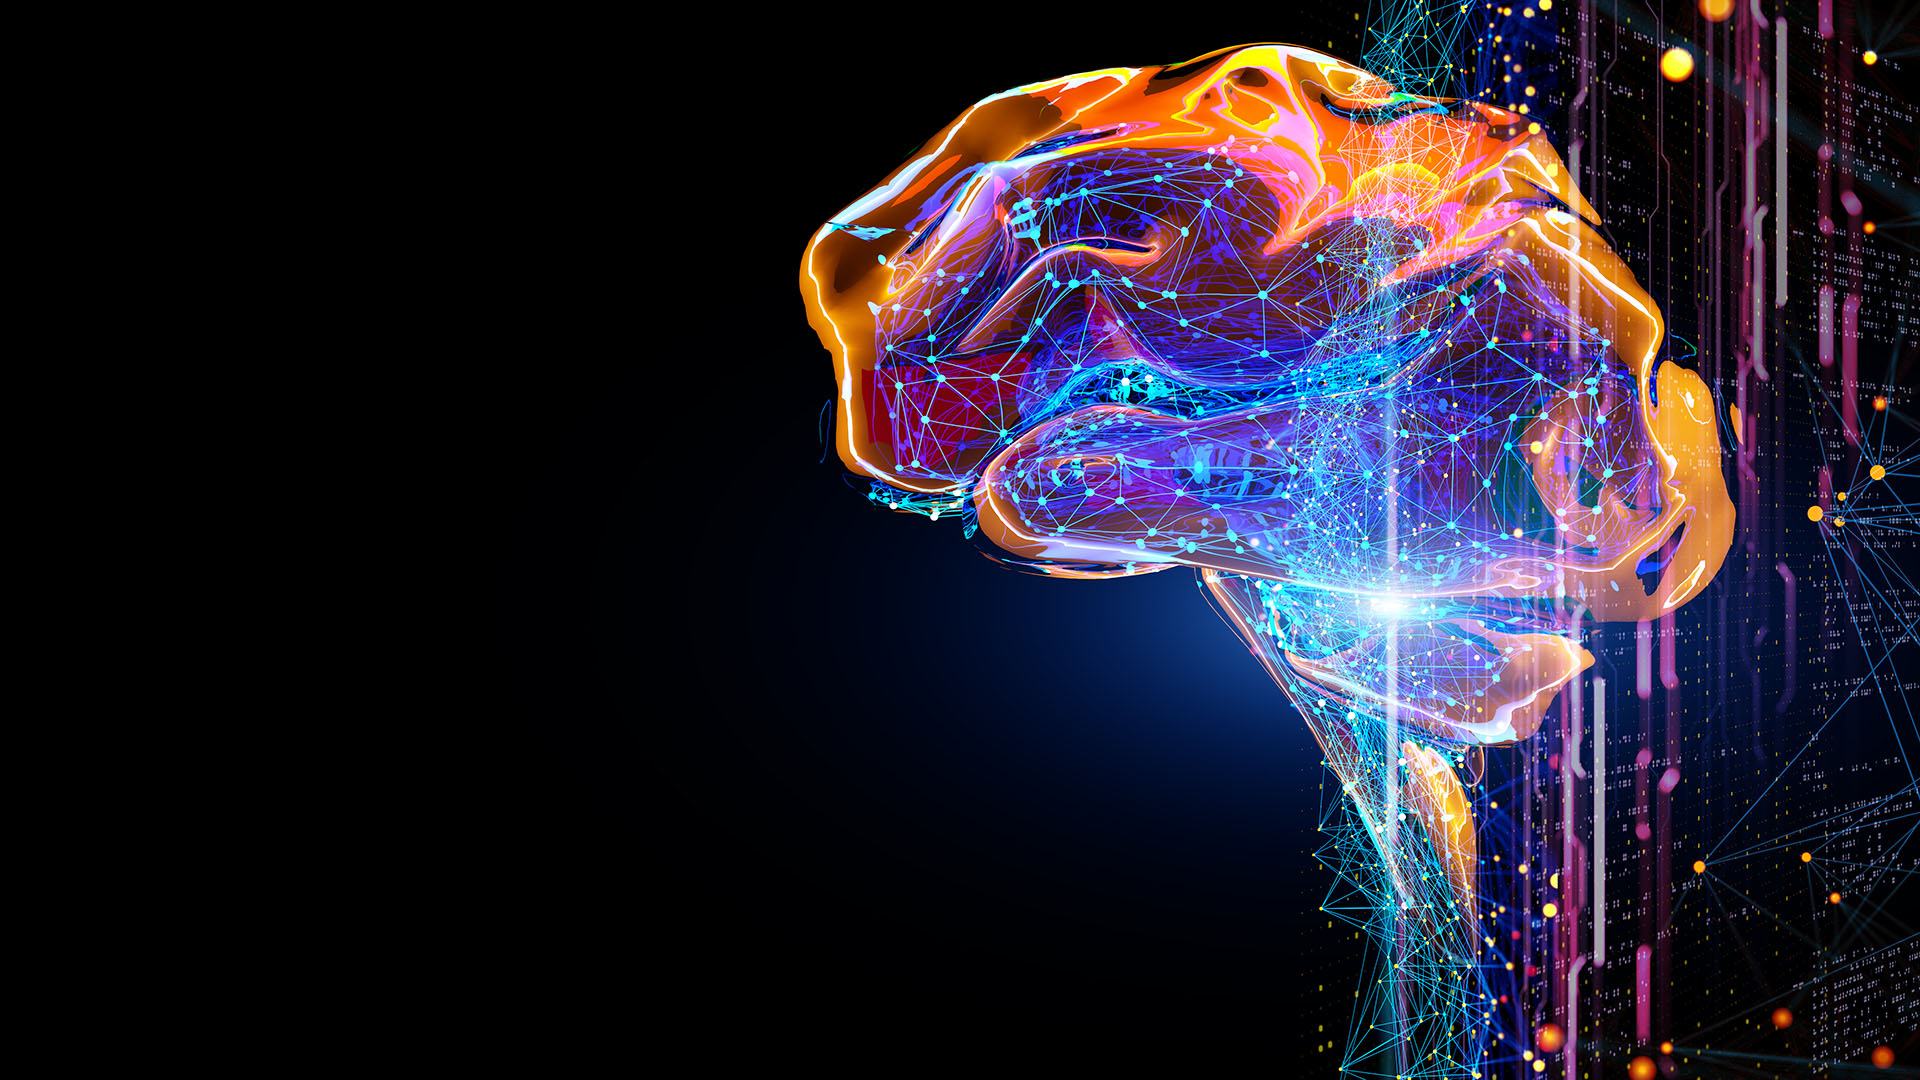 Los neurocientíficos desarrollaron un plan de estudios con tres técnicas que permiten impulsar la creatividad
(Getty Images)